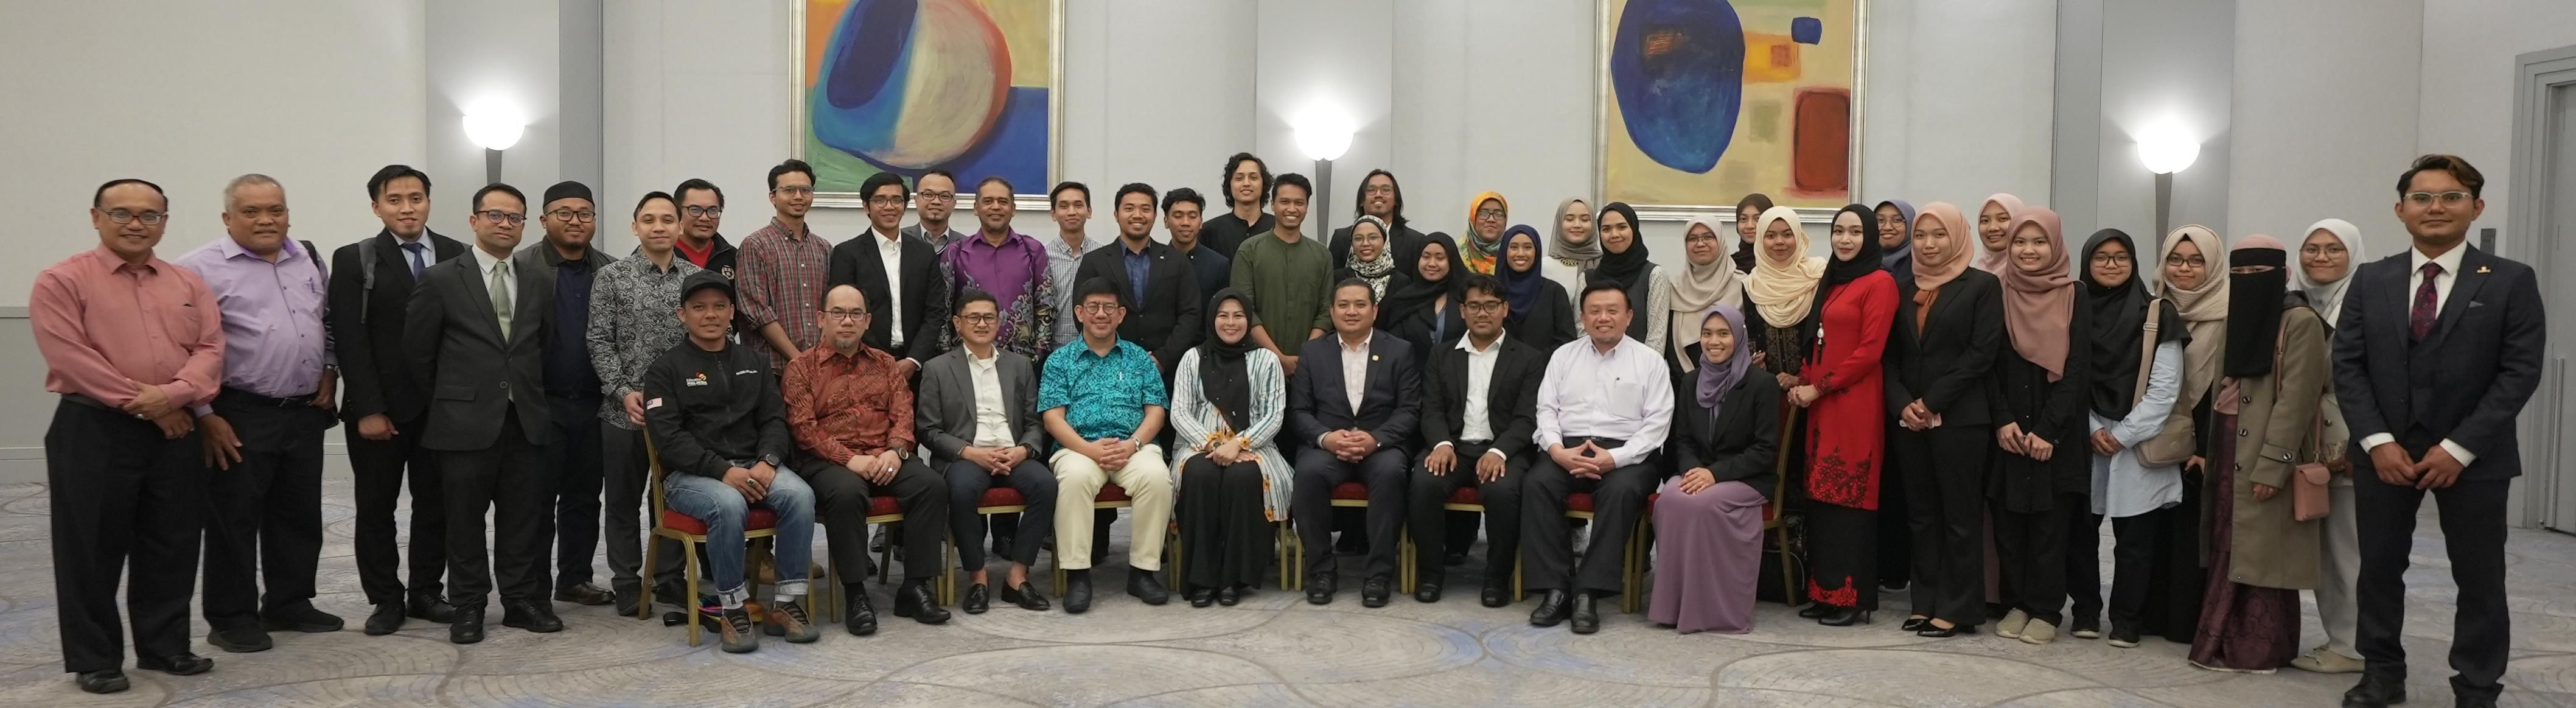 YBM Hadiri Sesi Libat Urus Bersama Pelajar Malaysia di Turki